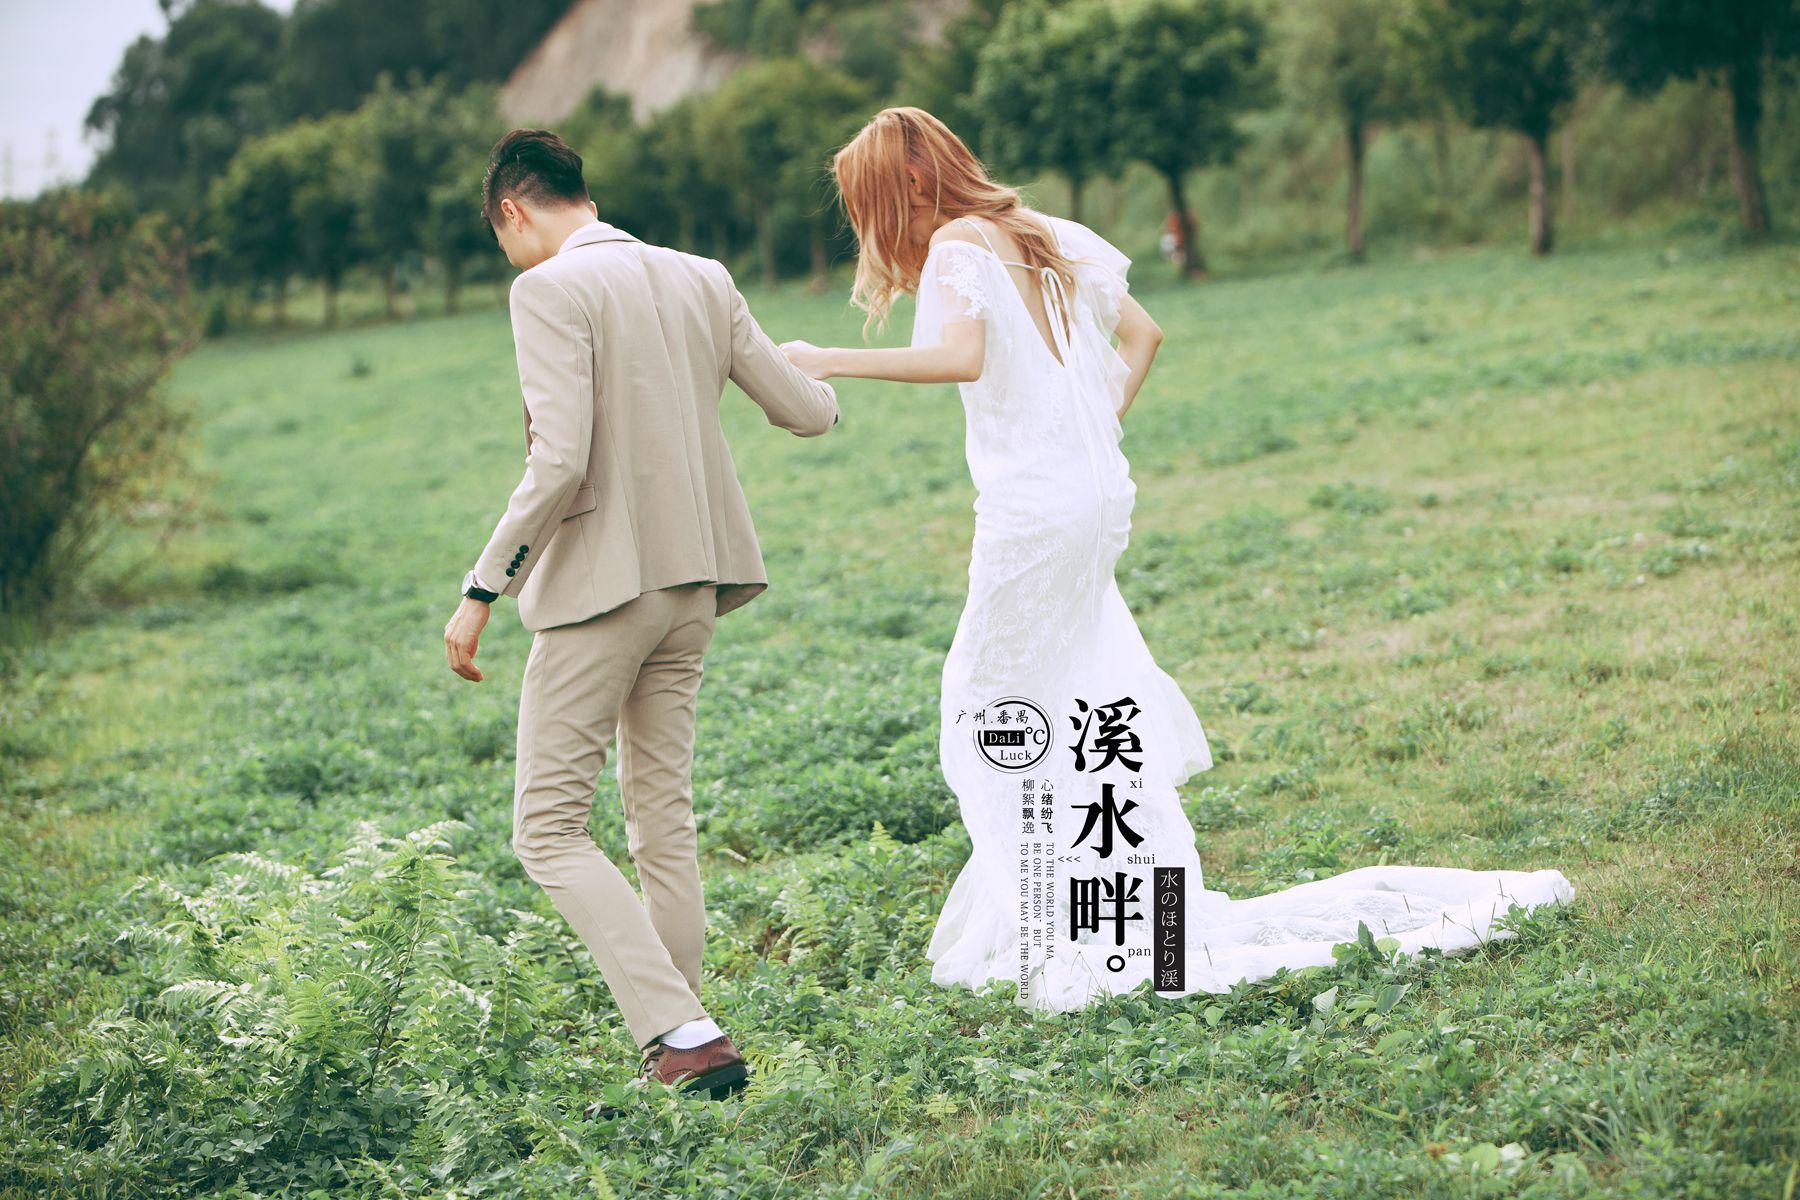 2017年7月广州婚纱照,肇庆婚纱照,婚纱照图片